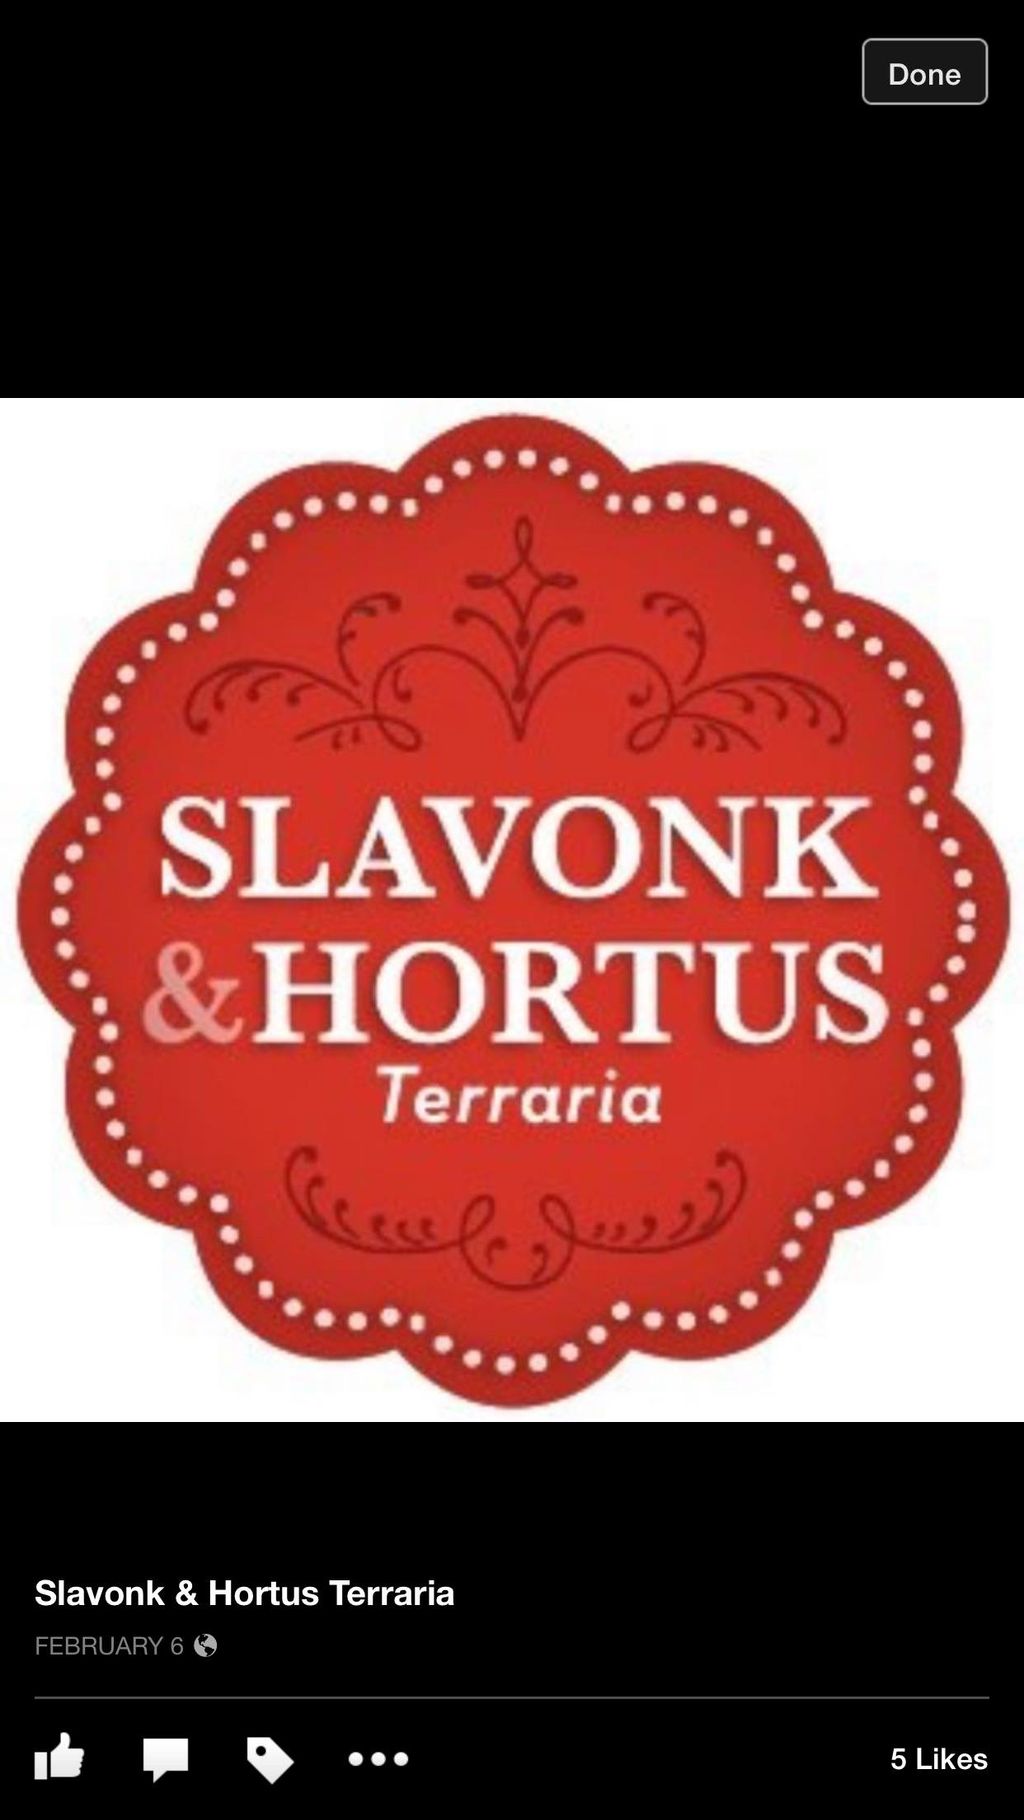 Slavonk & Hortus Terraria